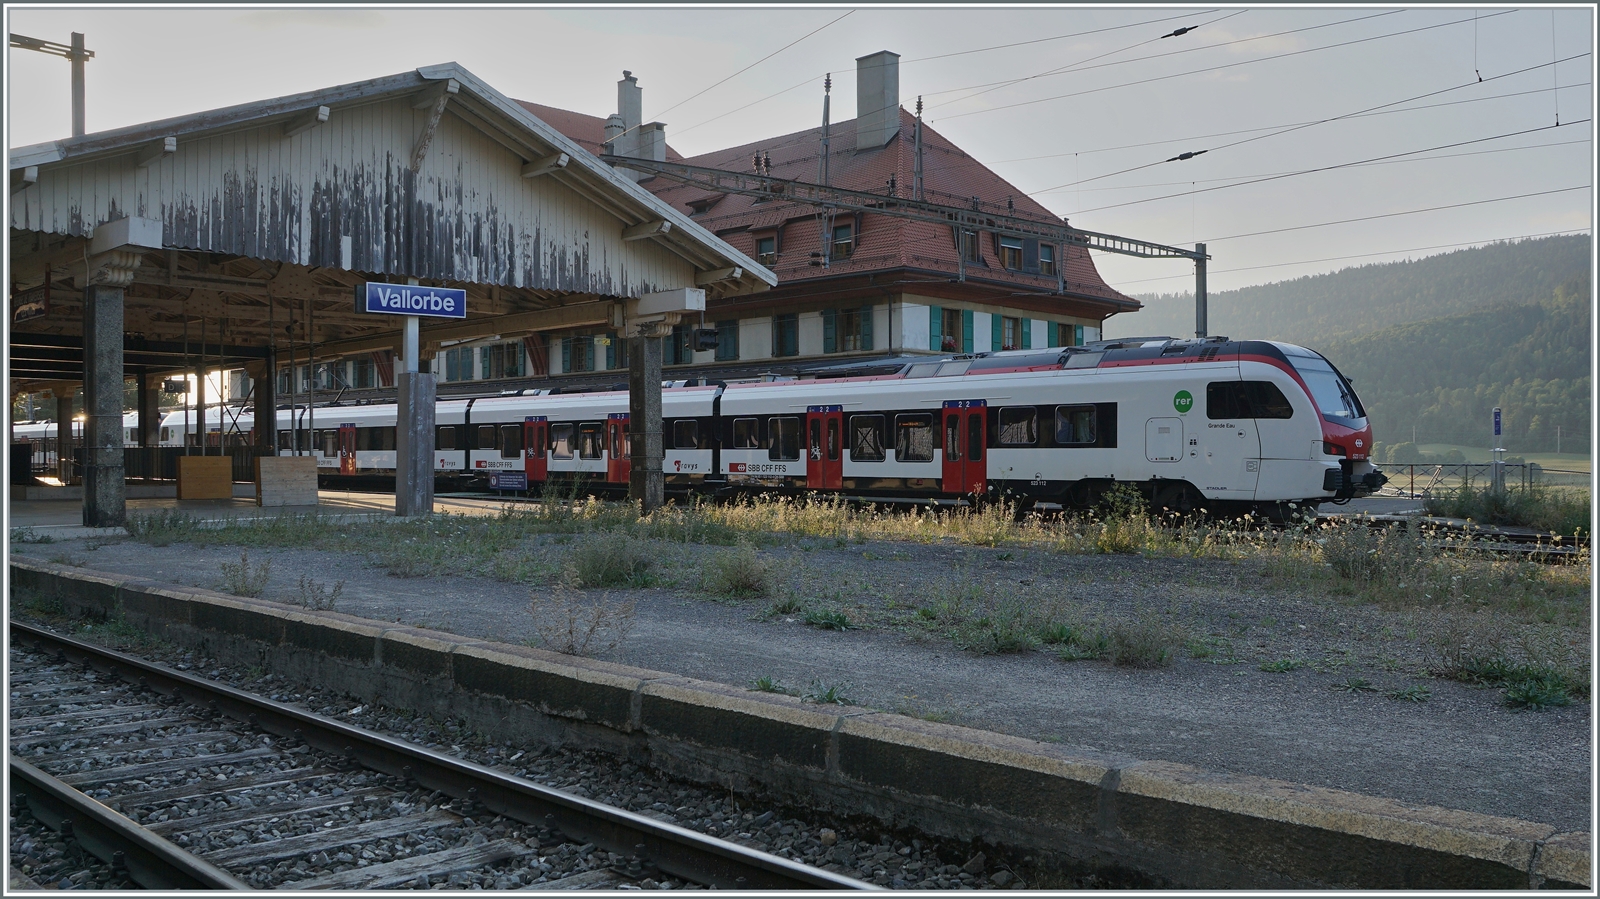 Das Bild mit dem SBB Flirt3 als S2 nach Aigle vermittelt etwas von der heutigen Ambiente des Bahnhof von Vallorbe, da ist es schwer vorzustellen, dass hier mal grosse Express Züge mit klangvollen Namen gehalten haben.

21. Juli 2022